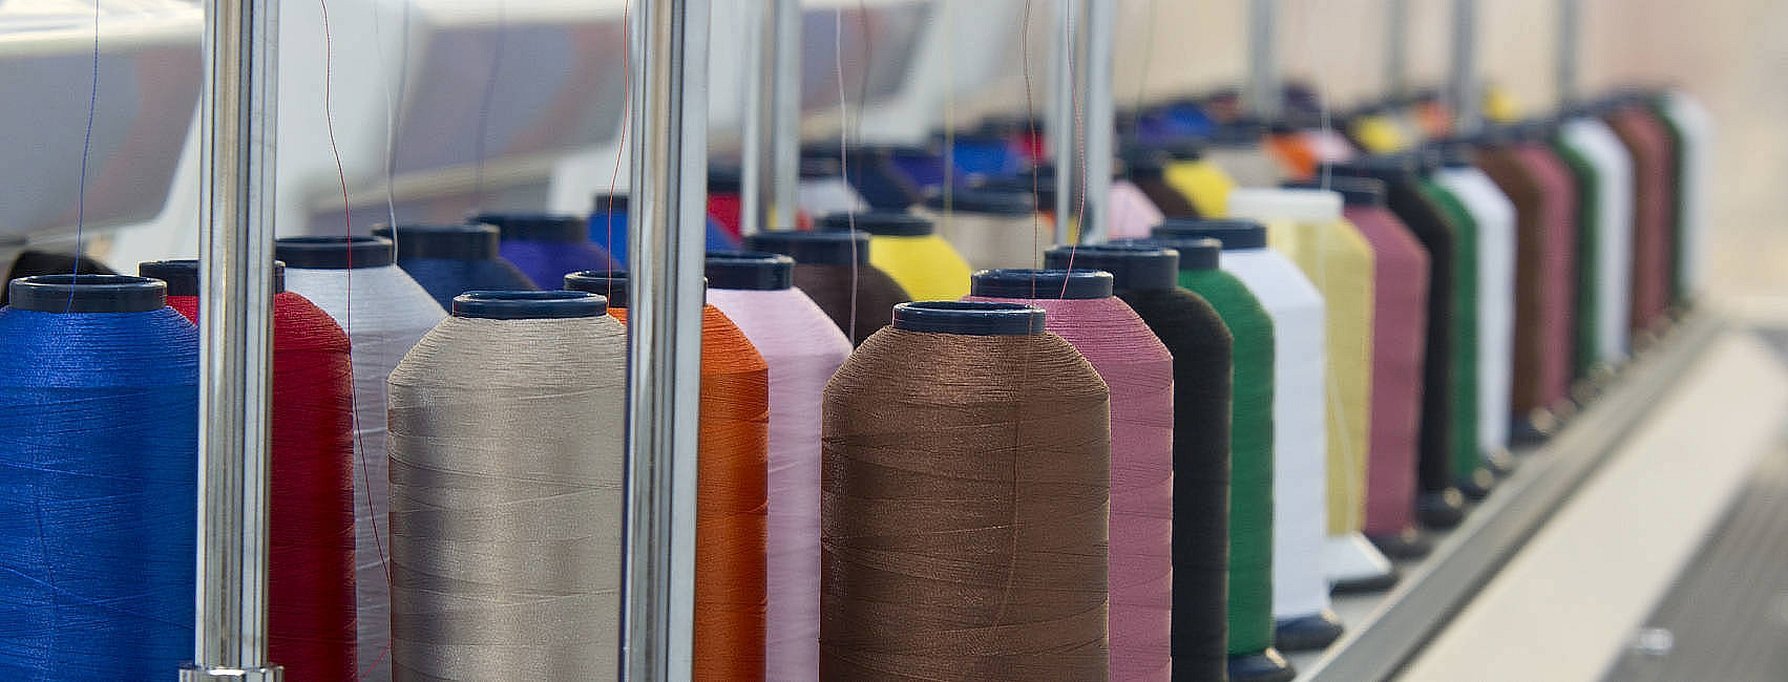 Легкая промышленность текстильная отрасль